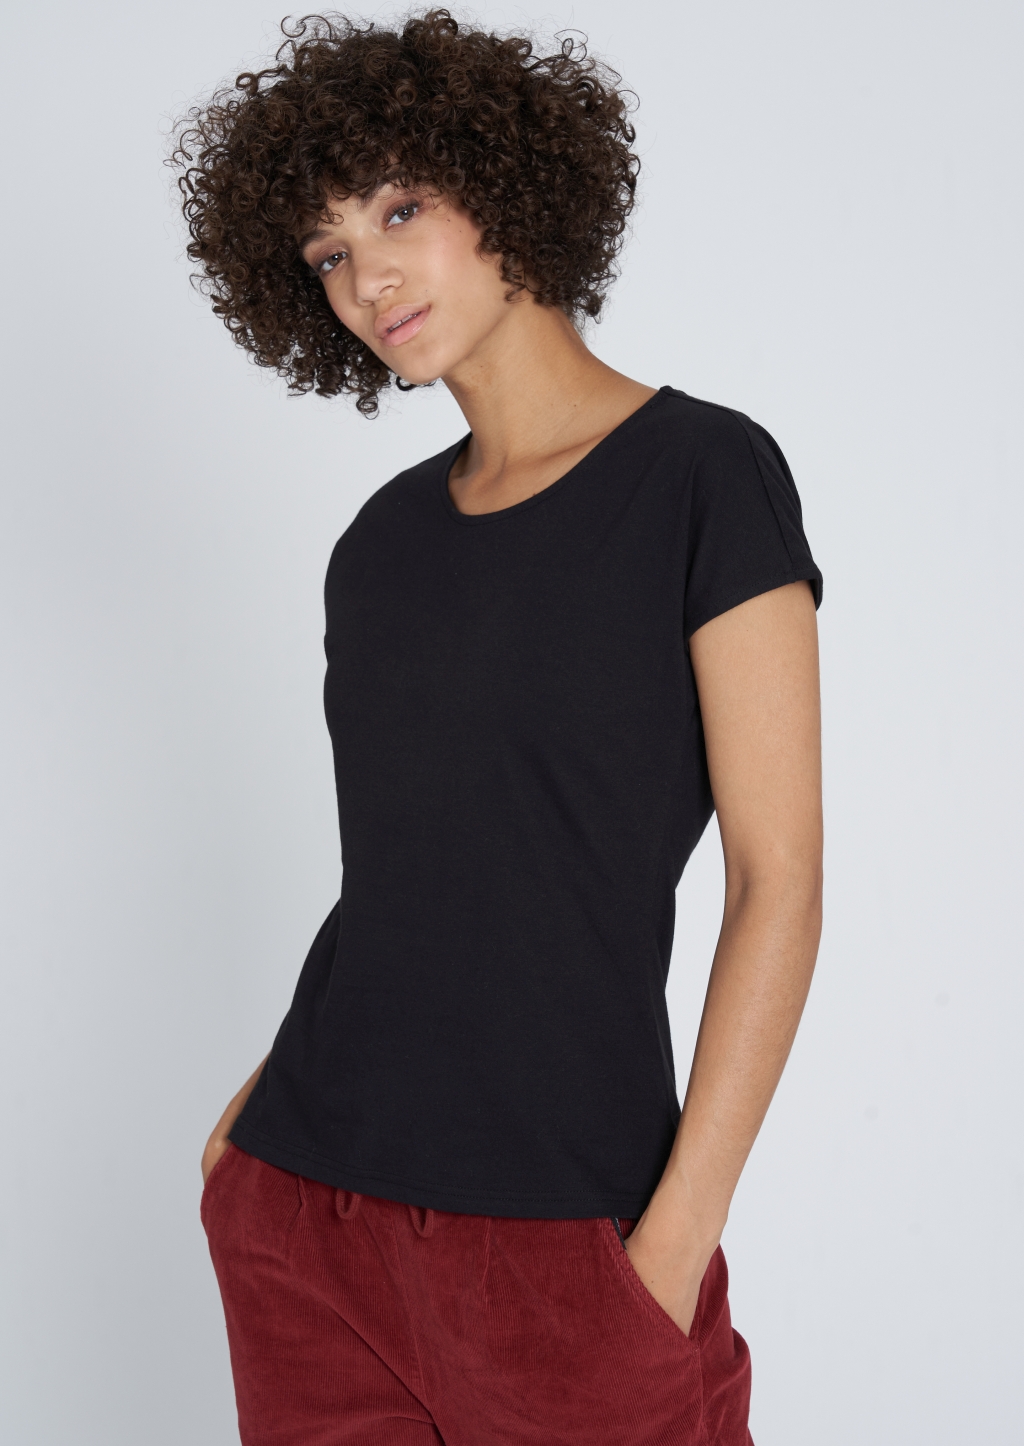 Frauen Casual T-Shirt black